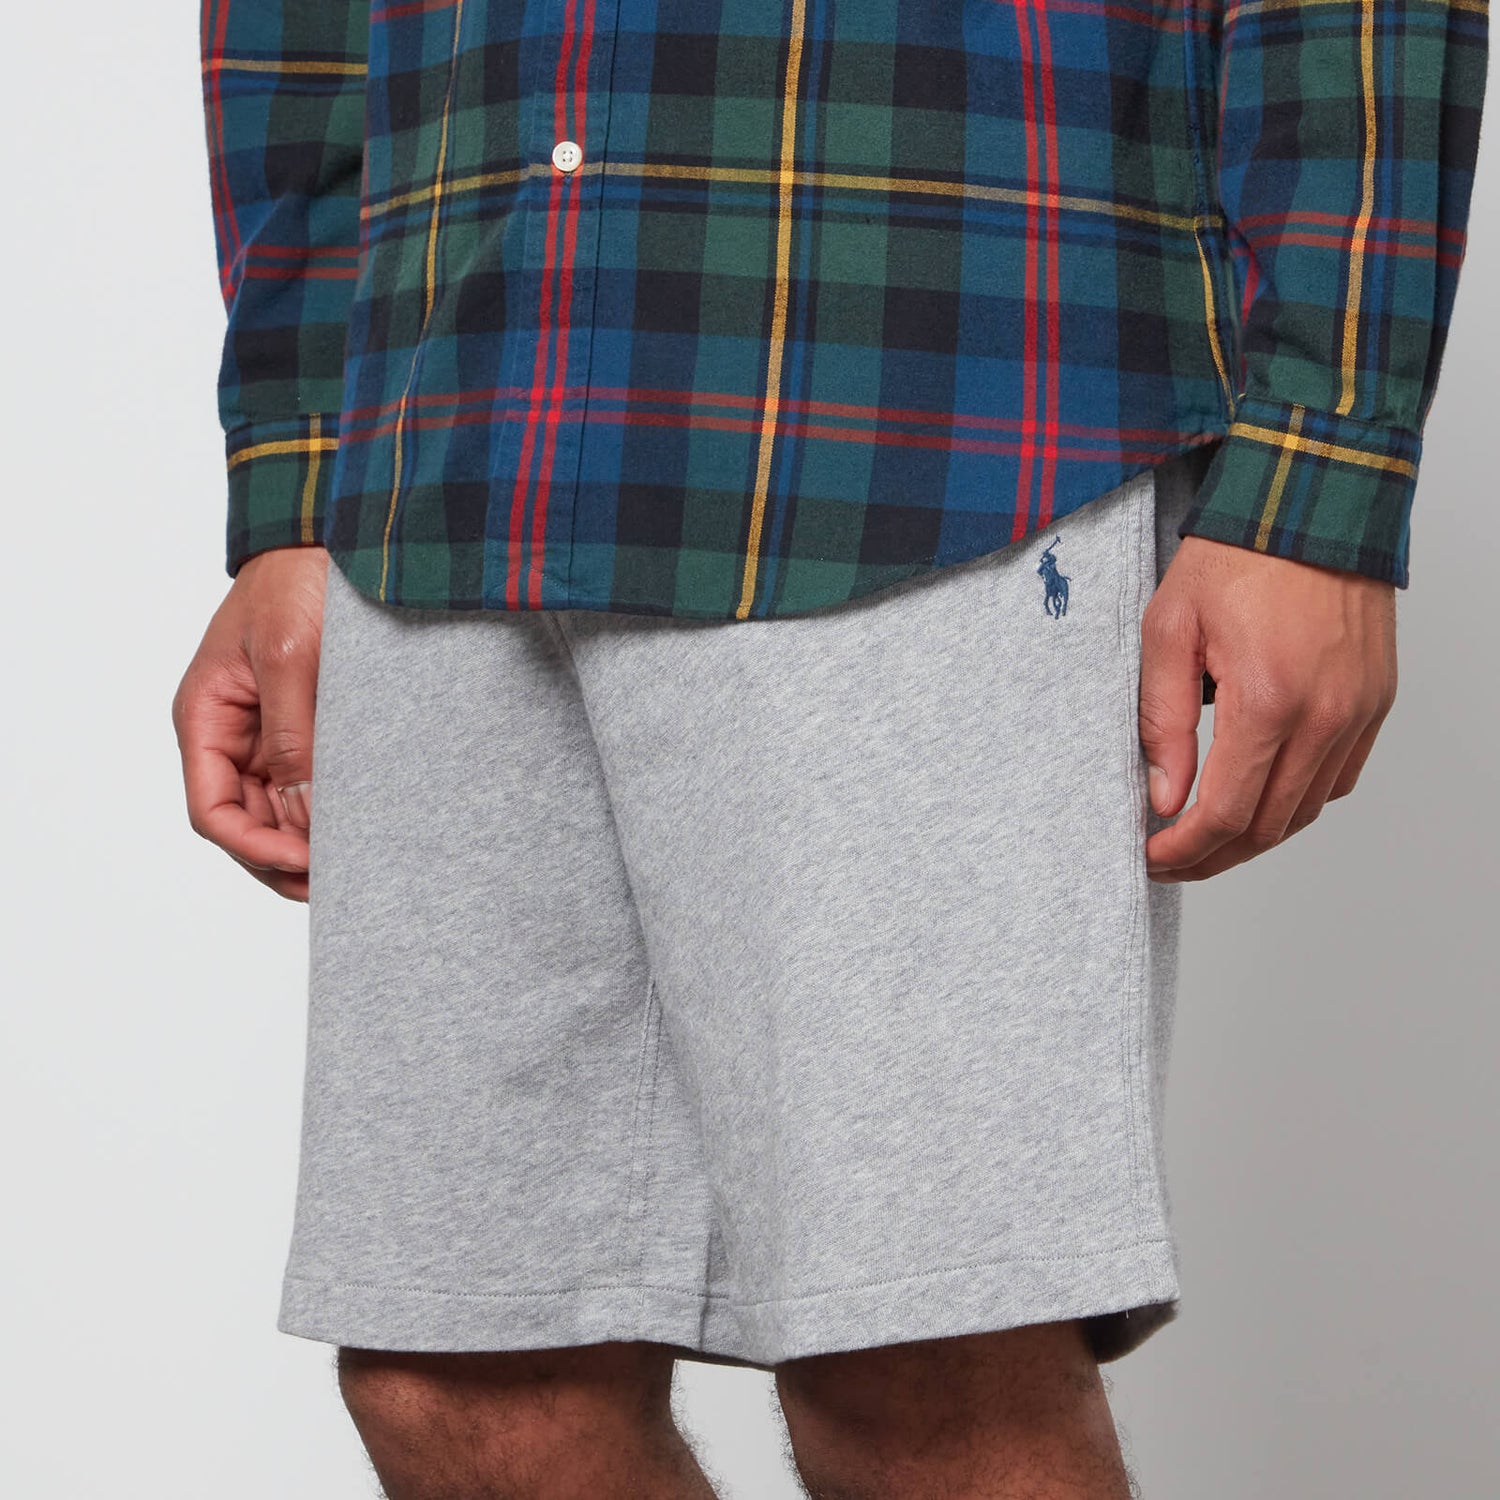 Polo Ralph Lauren Men's Shorts - Andover Heather - S